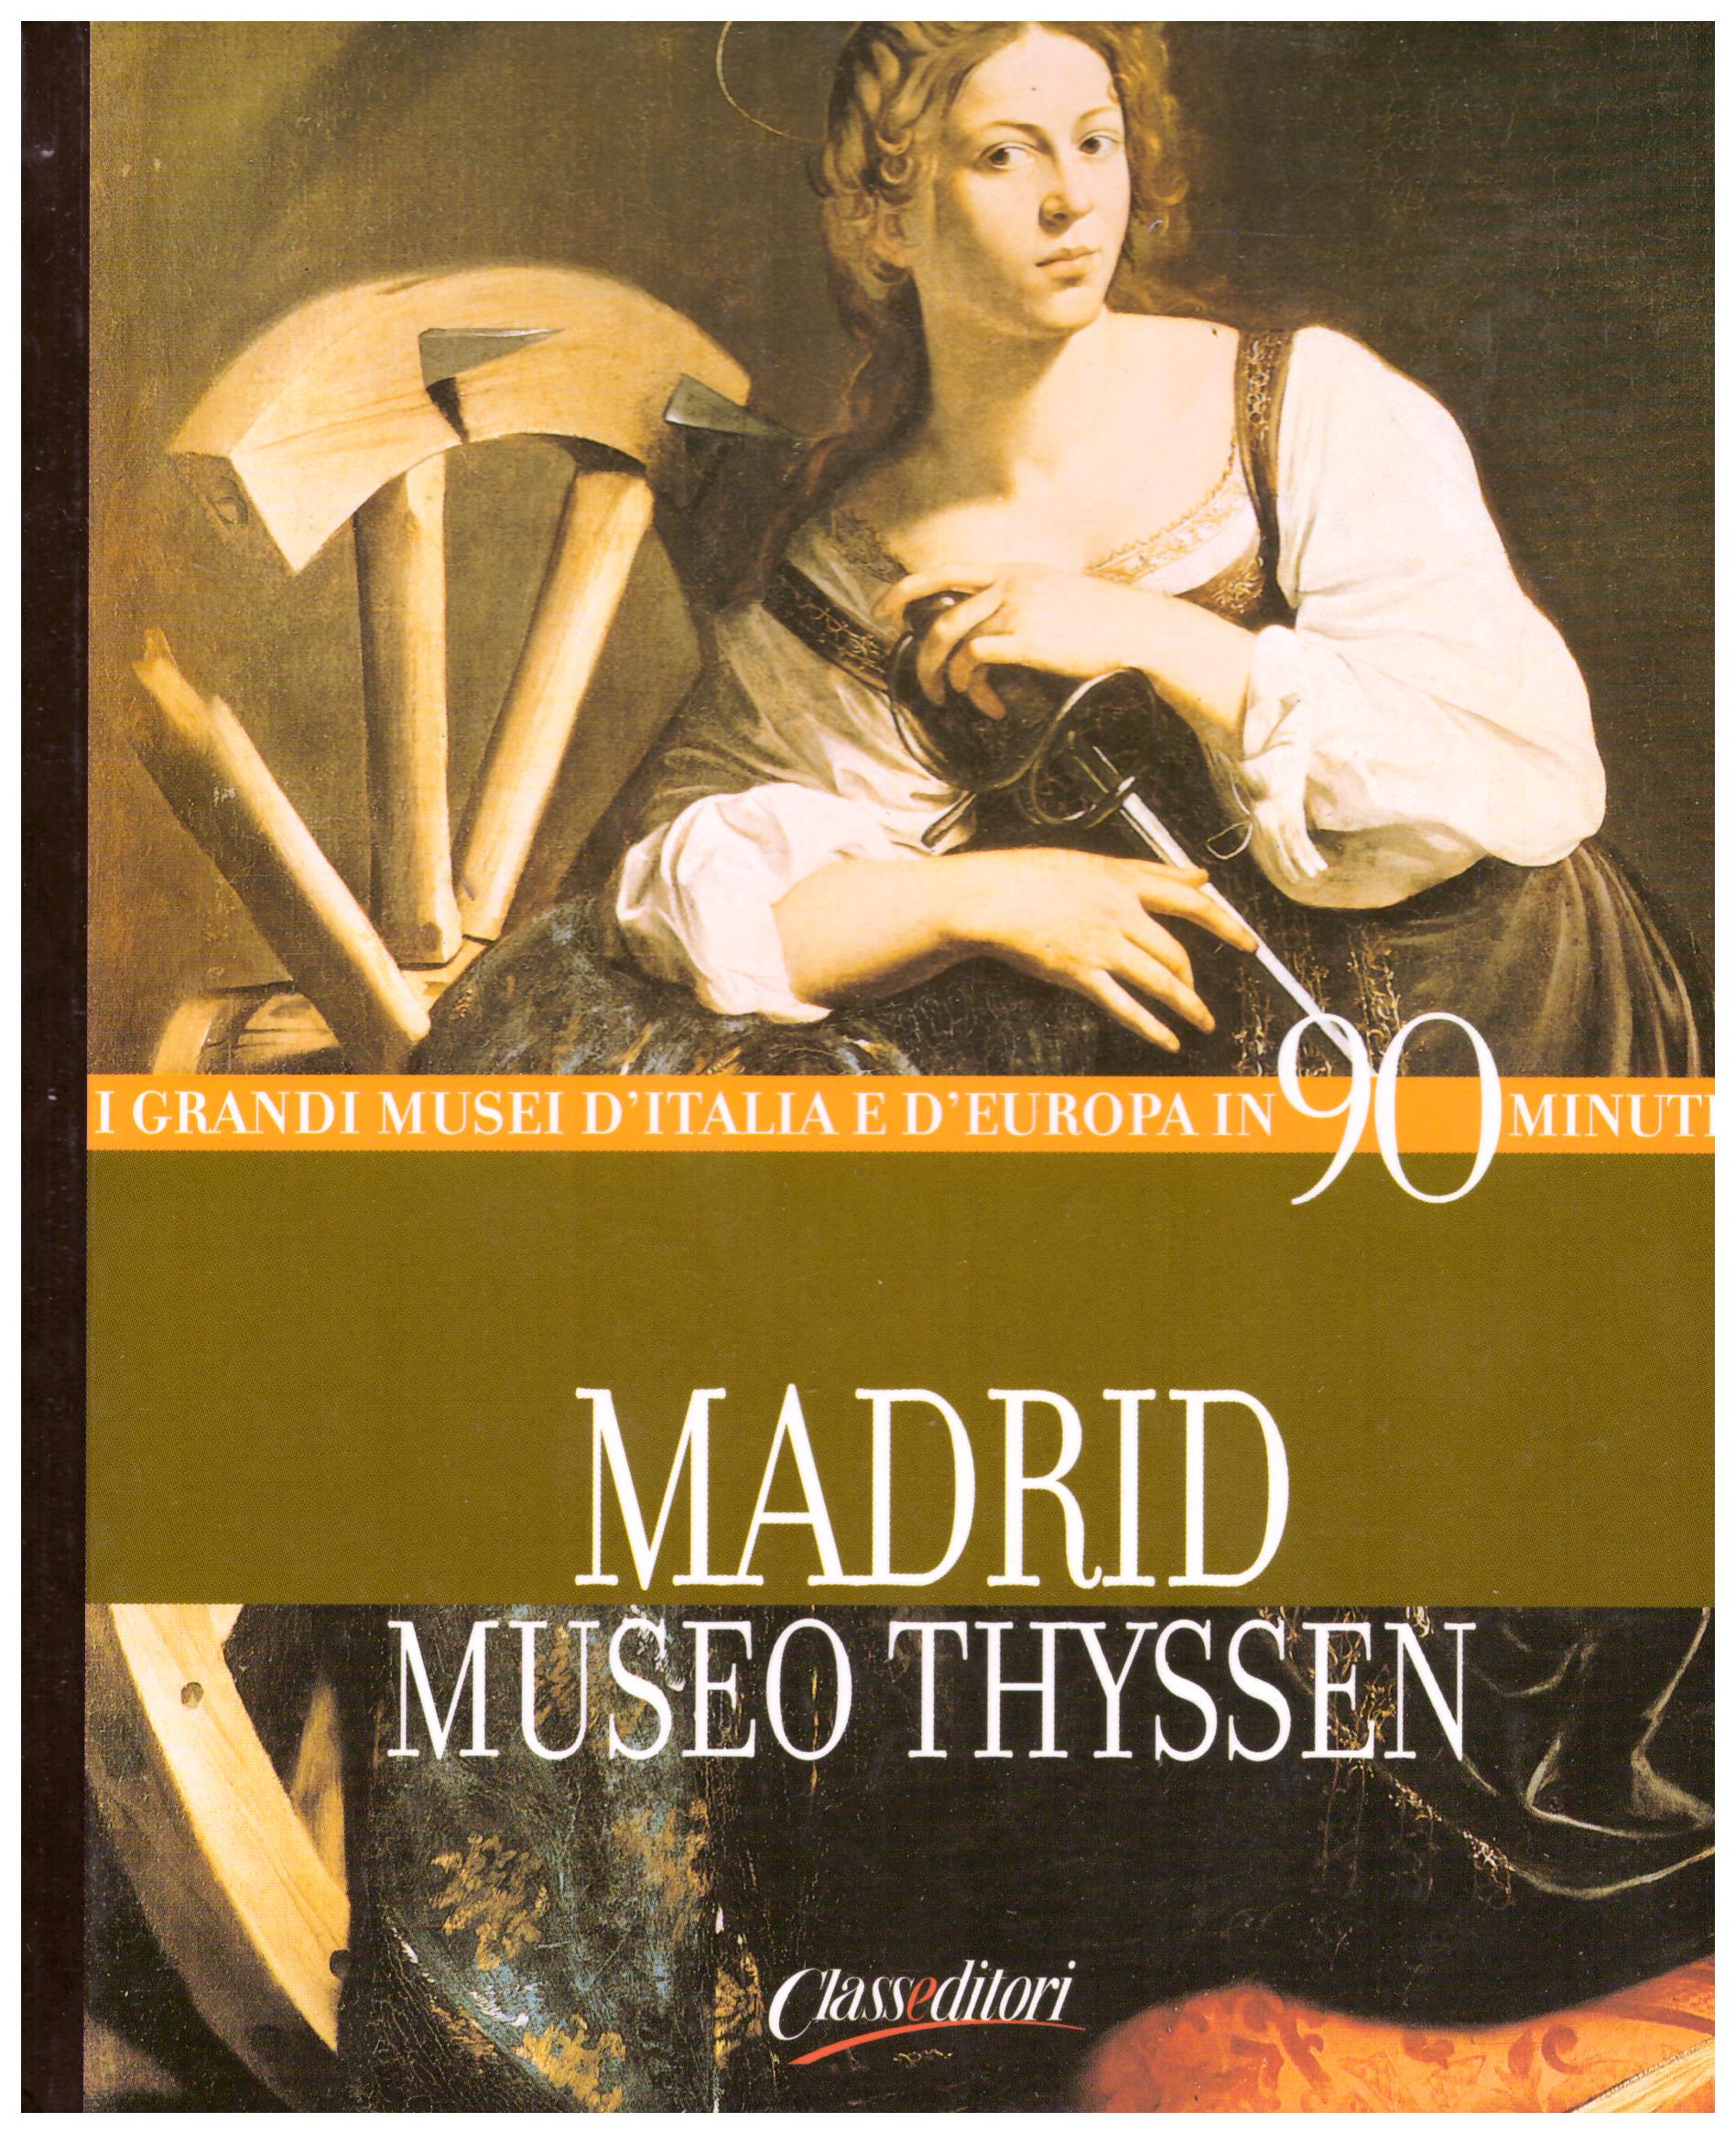 Titolo: I grandi musei d'Italia e d'Europa in 90 minuti, Madrid Museo Thyssen Autore: AA.VV.  Editore: Classeditori, 2004